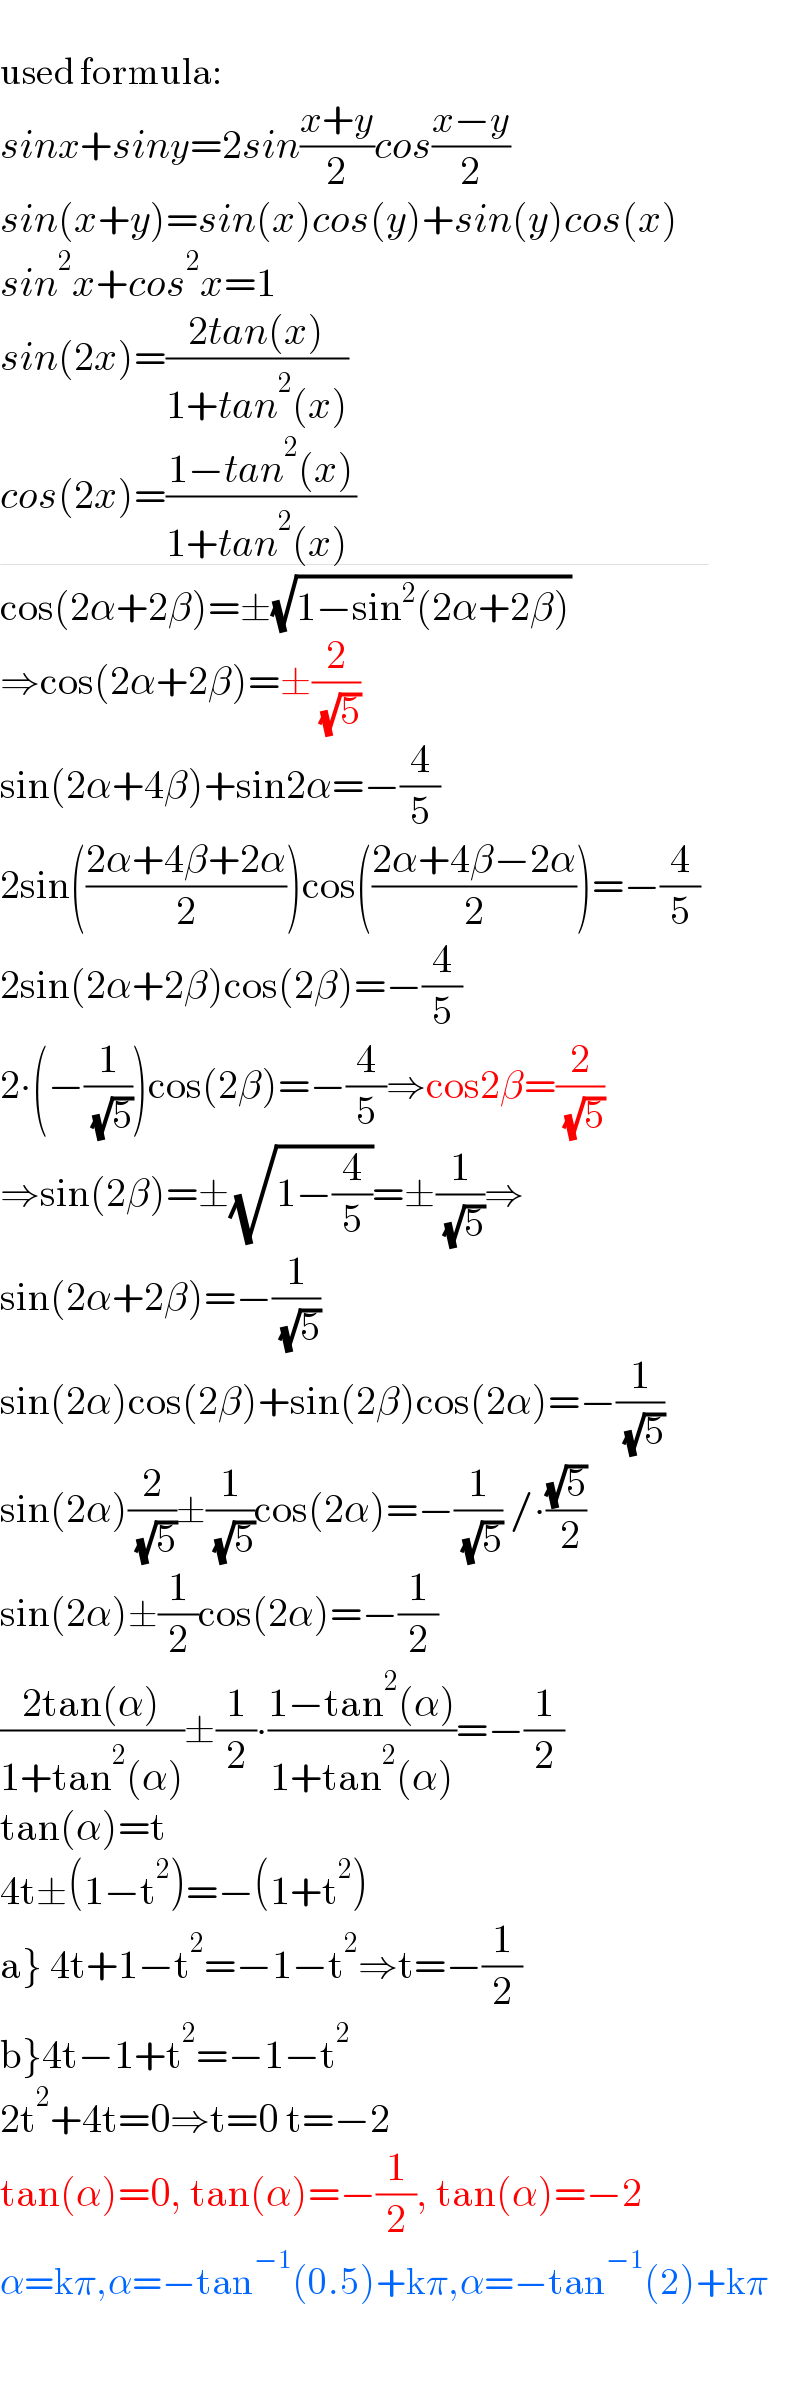   used formula:  sinx+siny=2sin((x+y)/2)cos((x−y)/2)  sin(x+y)=sin(x)cos(y)+sin(y)cos(x)  sin^2 x+cos^2 x=1  sin(2x)=((2tan(x))/(1+tan^2 (x)))  cos(2x)=((1−tan^2 (x))/(1+tan^2 (x) ))                                              cos(2α+2β)=±(√(1−sin^2 (2α+2β)))  ⇒cos(2α+2β)=±(2/( (√5)))  sin(2α+4β)+sin2α=−(4/5)  2sin(((2α+4β+2α)/2))cos(((2α+4β−2α)/2))=−(4/5)  2sin(2α+2β)cos(2β)=−(4/5)  2∙(−(1/( (√5))))cos(2β)=−(4/5)⇒cos2β=(2/( (√5)))  ⇒sin(2β)=±(√(1−(4/5)))=±(1/( (√5)))⇒  sin(2α+2β)=−(1/( (√5)))  sin(2α)cos(2β)+sin(2β)cos(2α)=−(1/( (√5)))  sin(2α)(2/( (√5)))±(1/( (√5)))cos(2α)=−(1/( (√5))) /∙((√5)/( 2))  sin(2α)±(1/2)cos(2α)=−(1/2)  ((2tan(α))/(1+tan^2 (α)))±(1/2)∙((1−tan^2 (α))/(1+tan^2 (α)))=−(1/2)  tan(α)=t  4t±(1−t^2 )=−(1+t^2 )  a} 4t+1−t^2 =−1−t^2 ⇒t=−(1/2)  b}4t−1+t^2 =−1−t^2   2t^2 +4t=0⇒t=0 t=−2  tan(α)=0, tan(α)=−(1/2), tan(α)=−2  α=kπ,α=−tan^(−1) (0.5)+kπ,α=−tan^(−1) (2)+kπ    